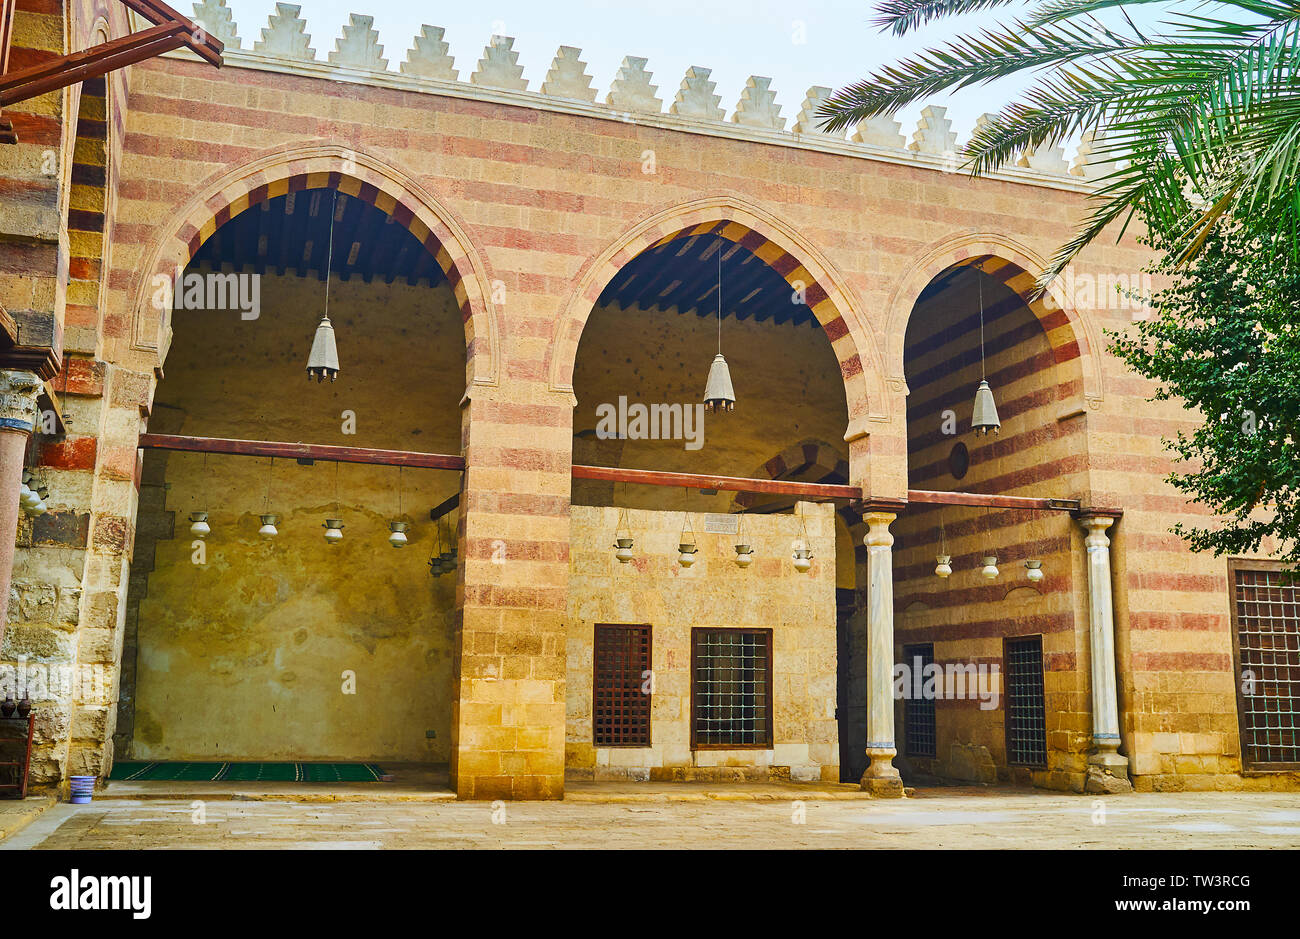 La pietra di arcade Aqsunqur (blu) Moschea con Ablaq (con striping) pietra decorazione, soffitto in legno, vintage lampade a olio e merlature a zig-zag, Cairo, Egy Foto Stock